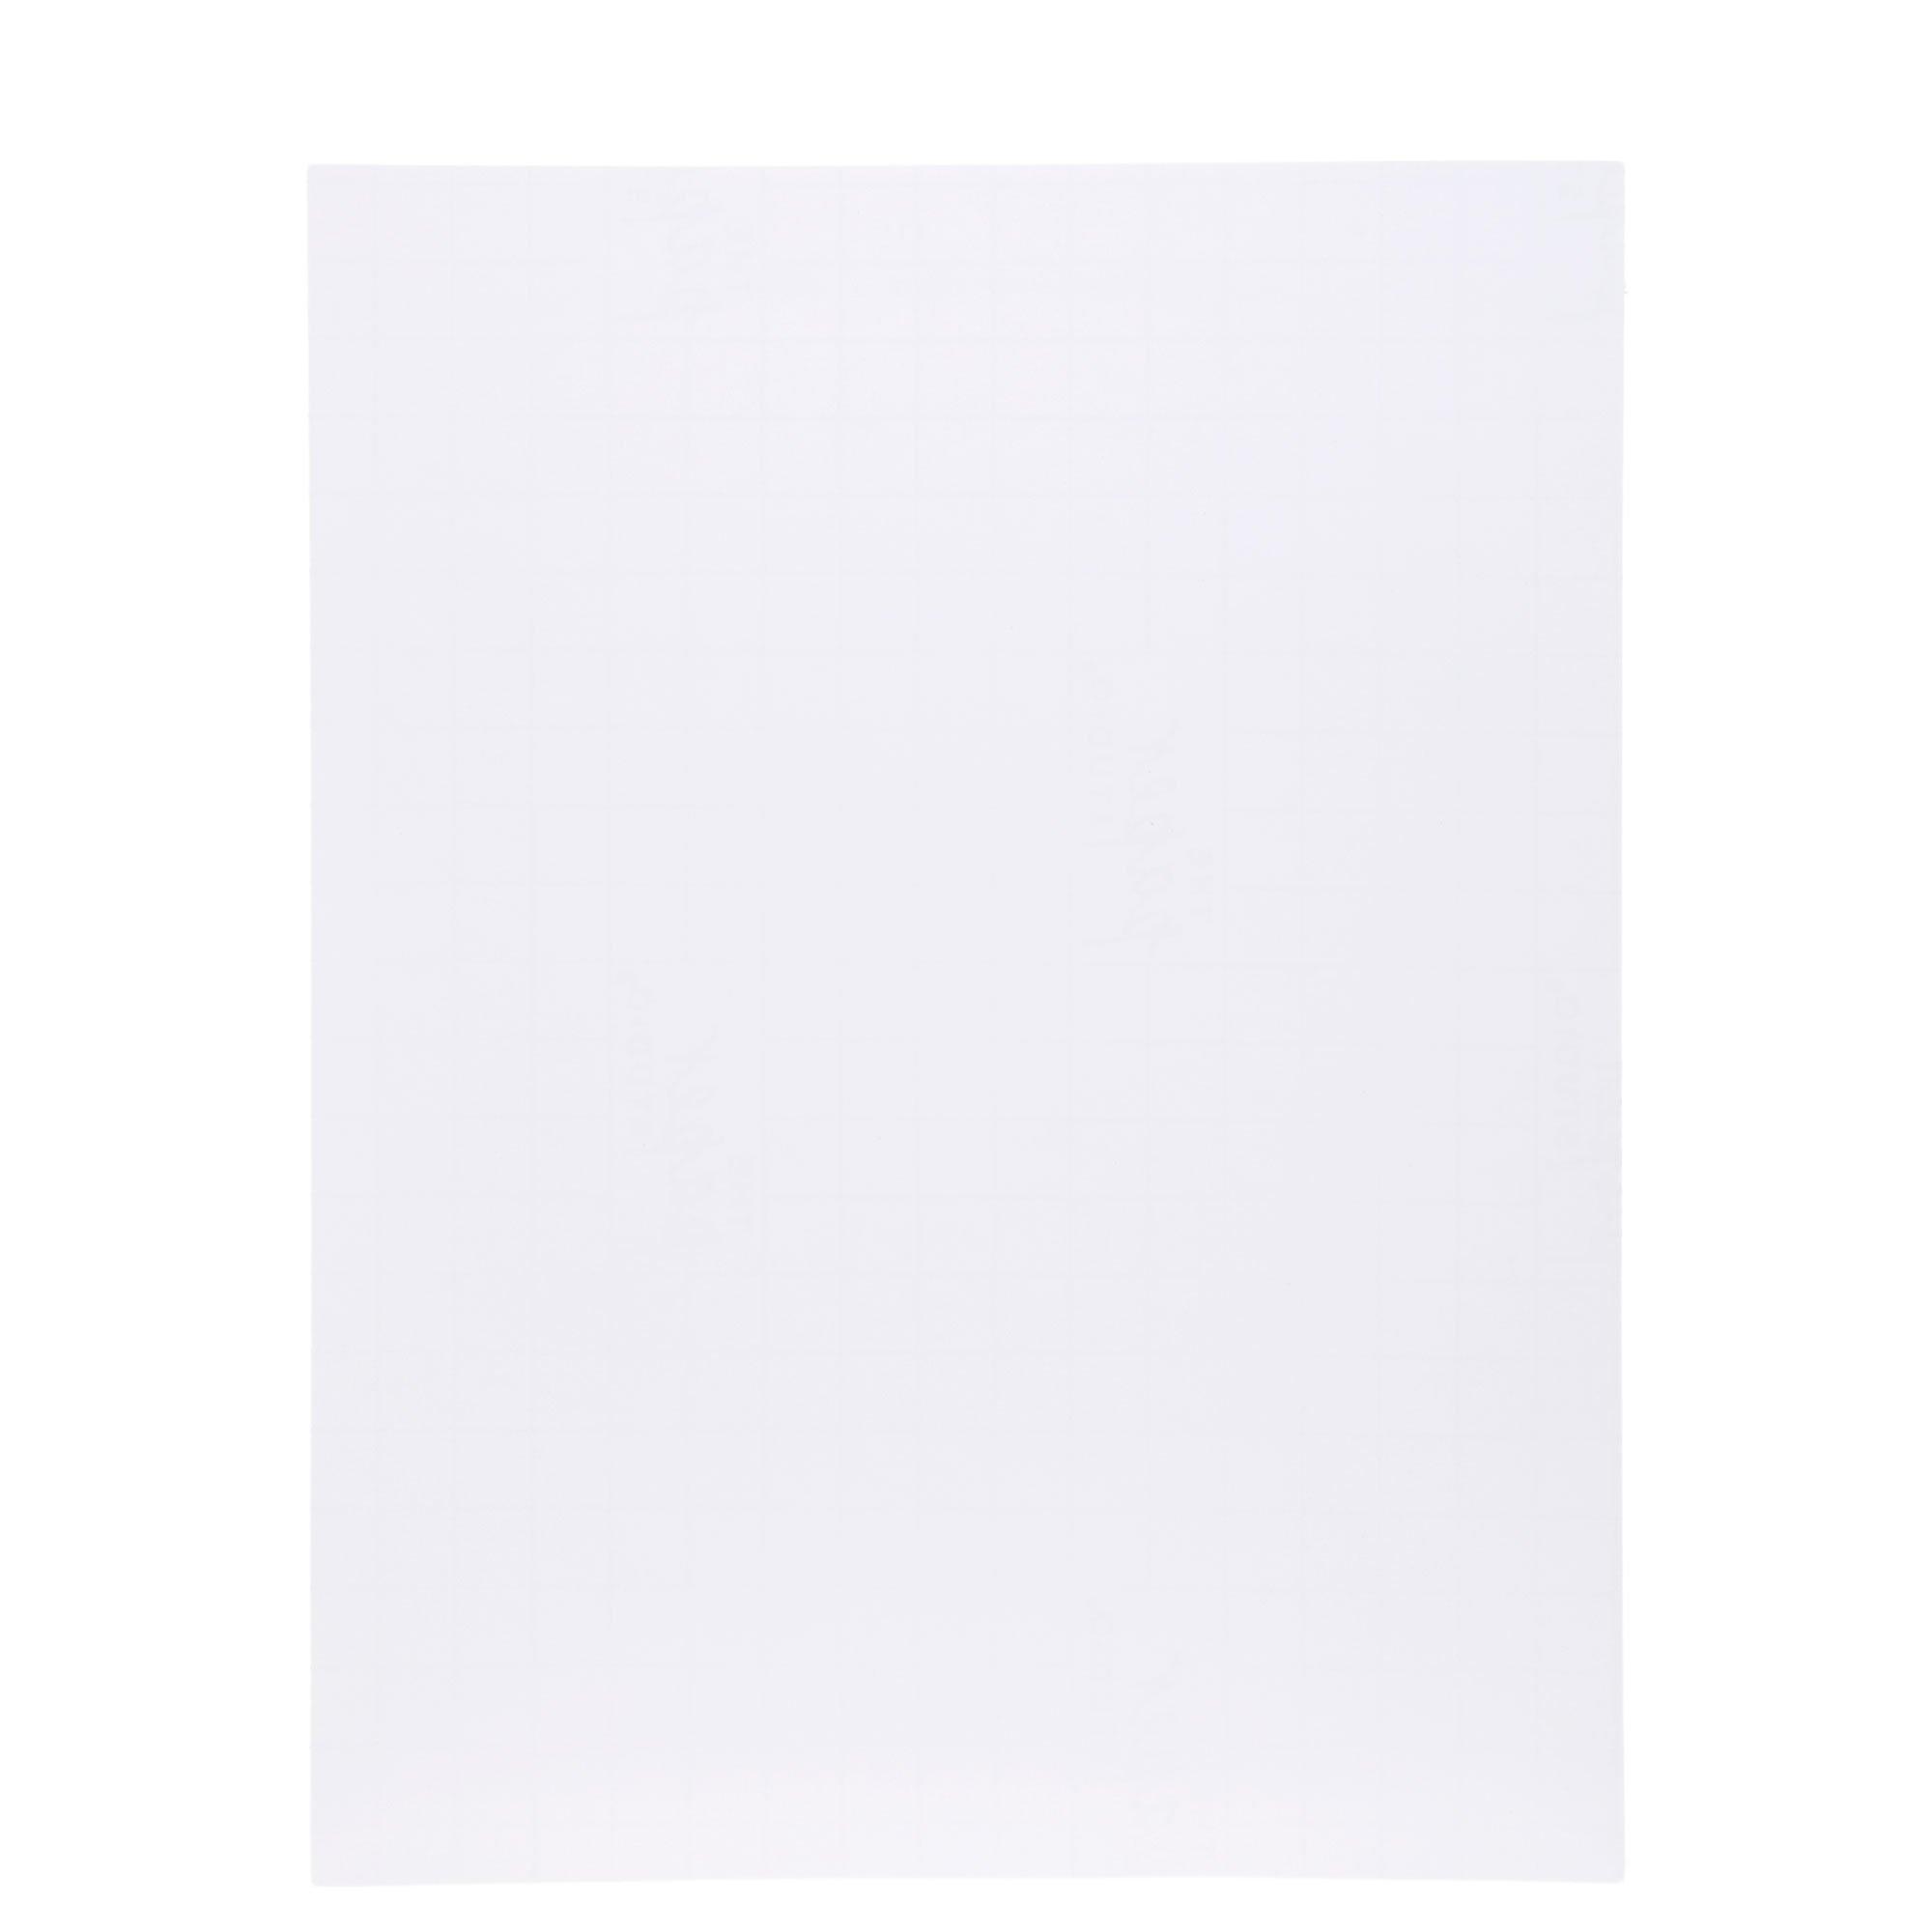 White Printable Sticker Paper - 8 1/2 x 11, Hobby Lobby